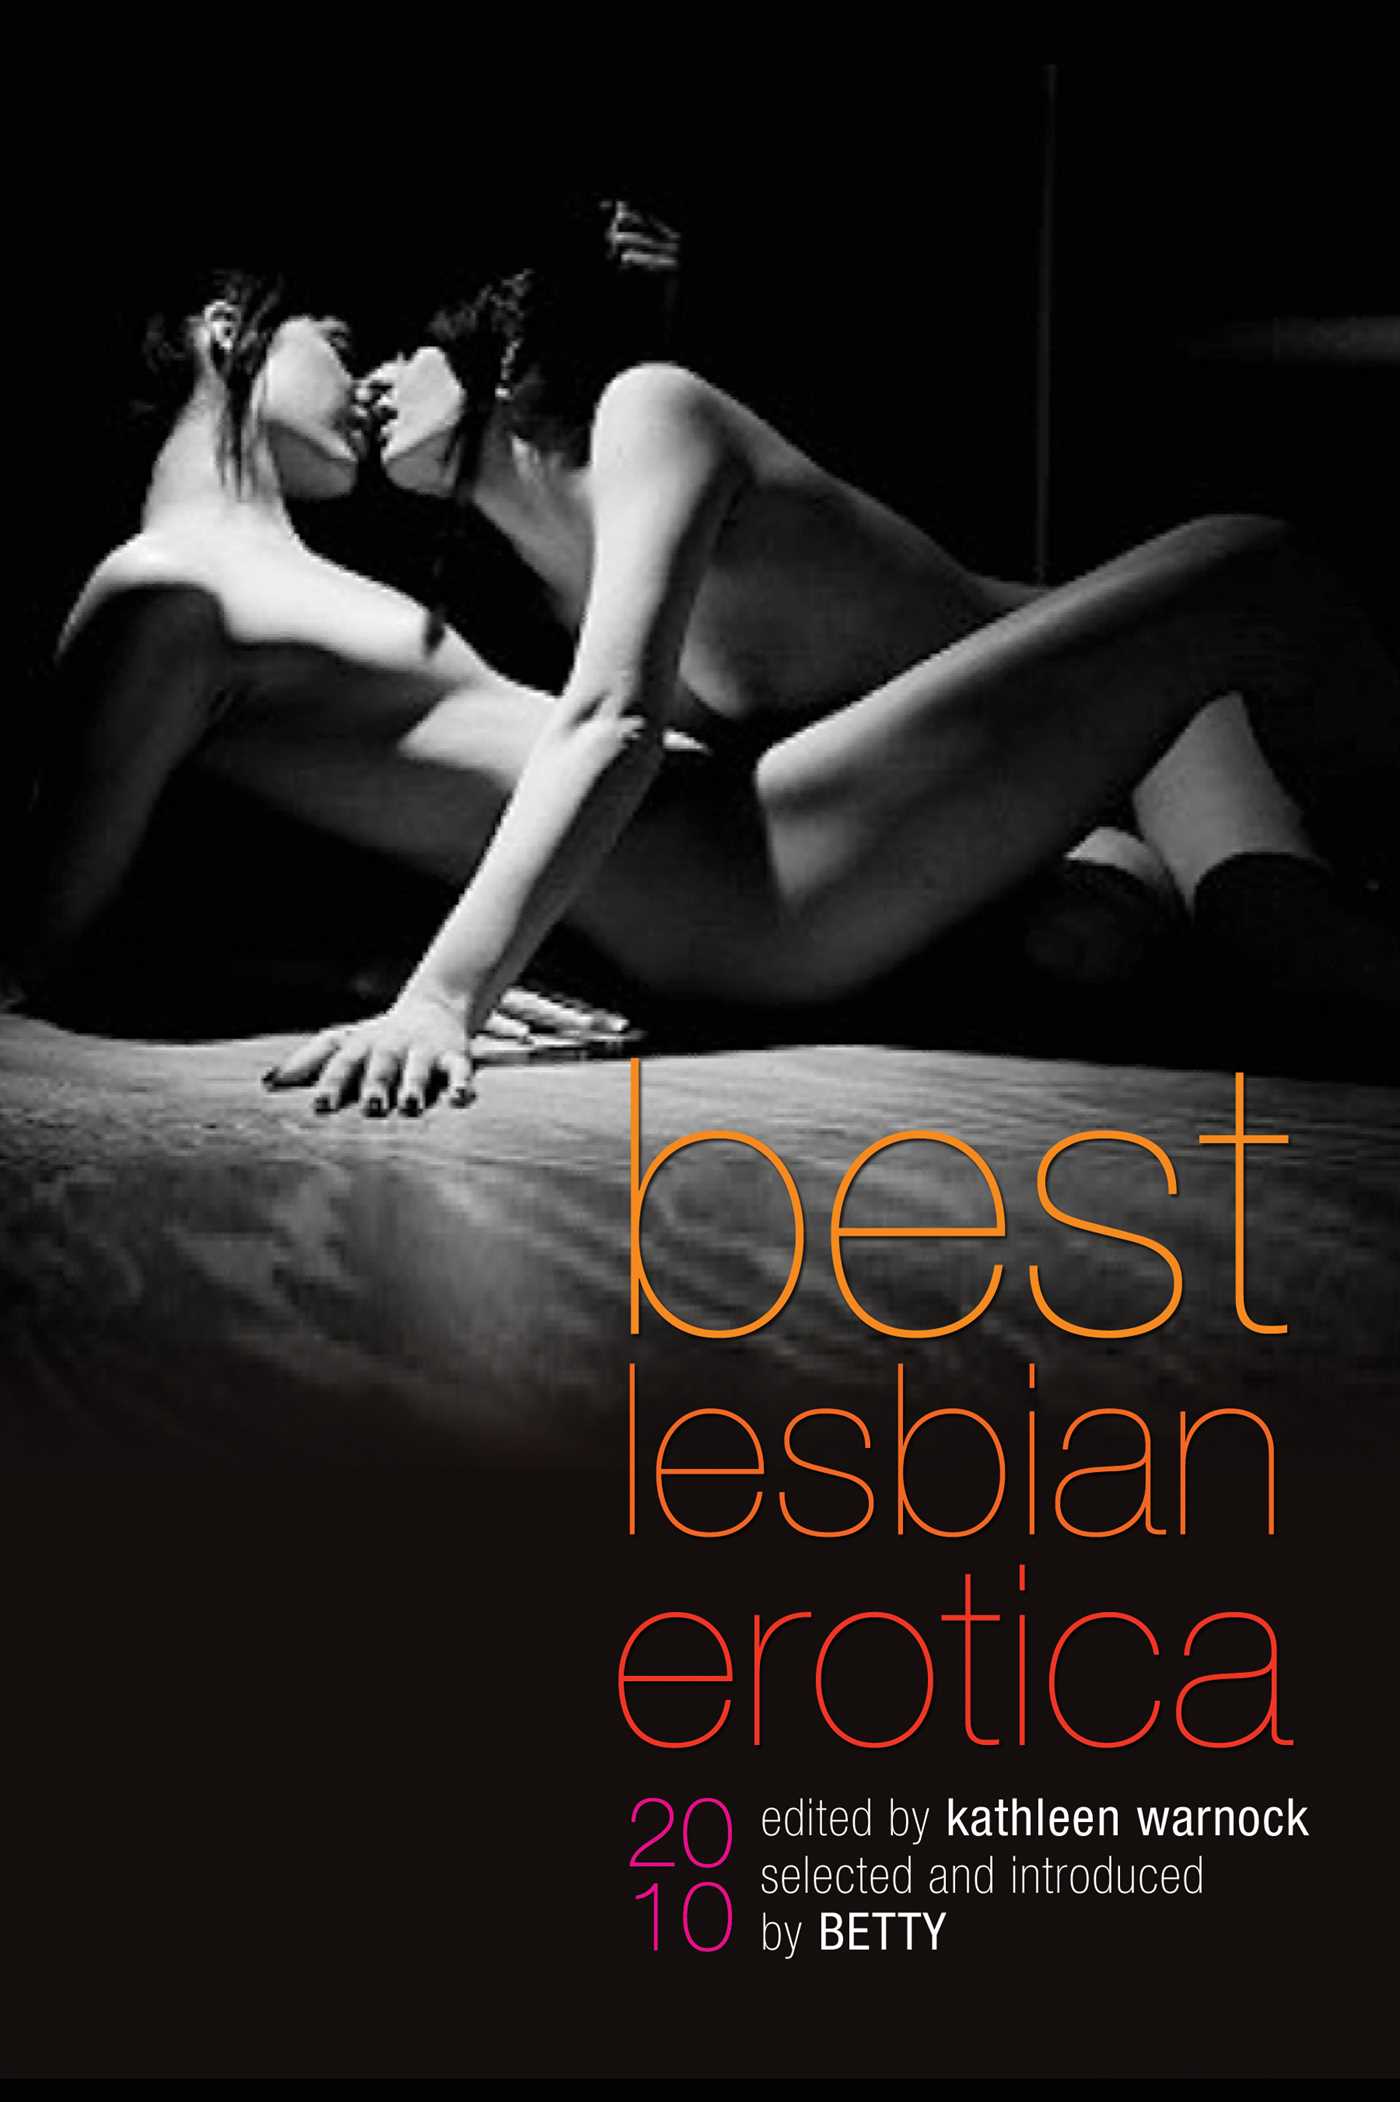 Erotica free ebooks